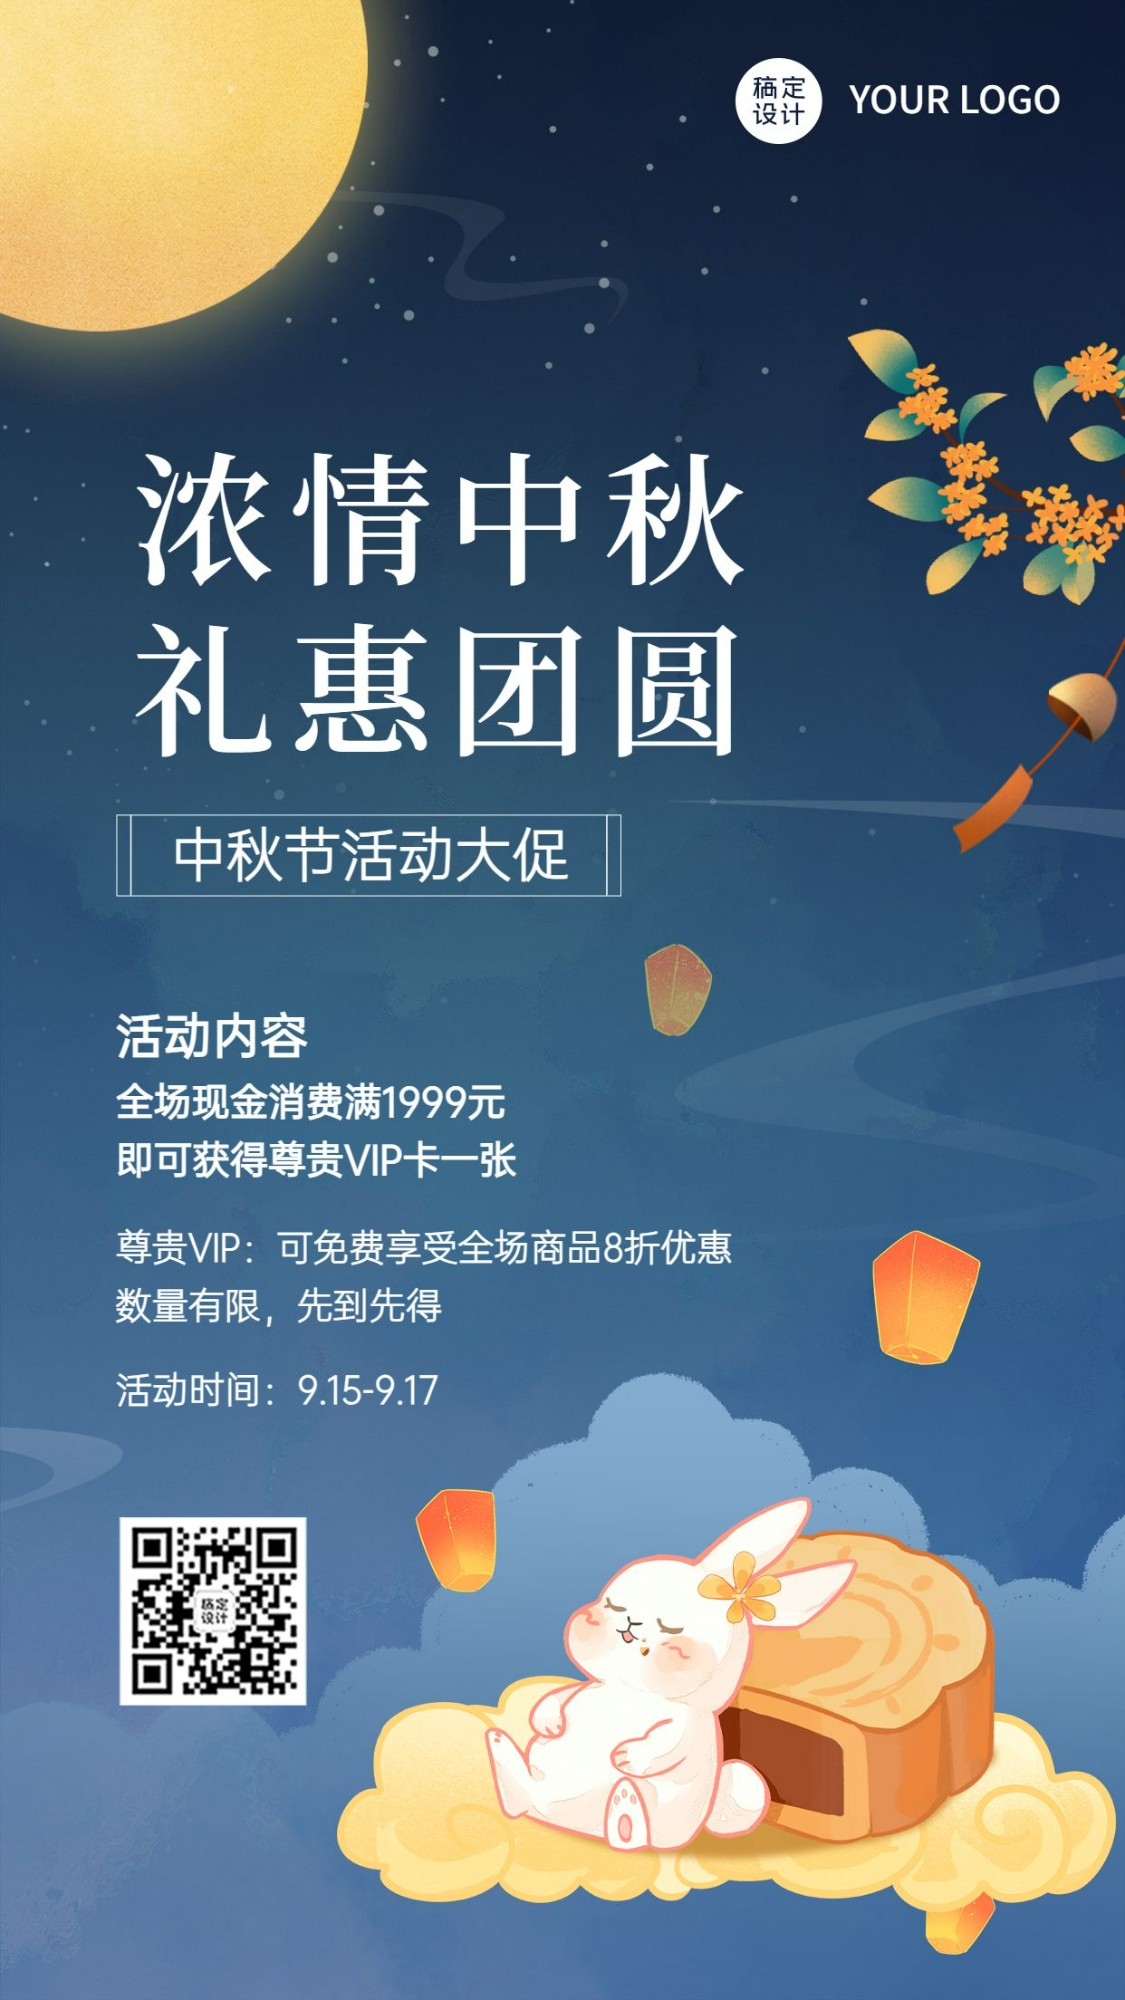 中秋节福利活动促销营销手机海报预览效果